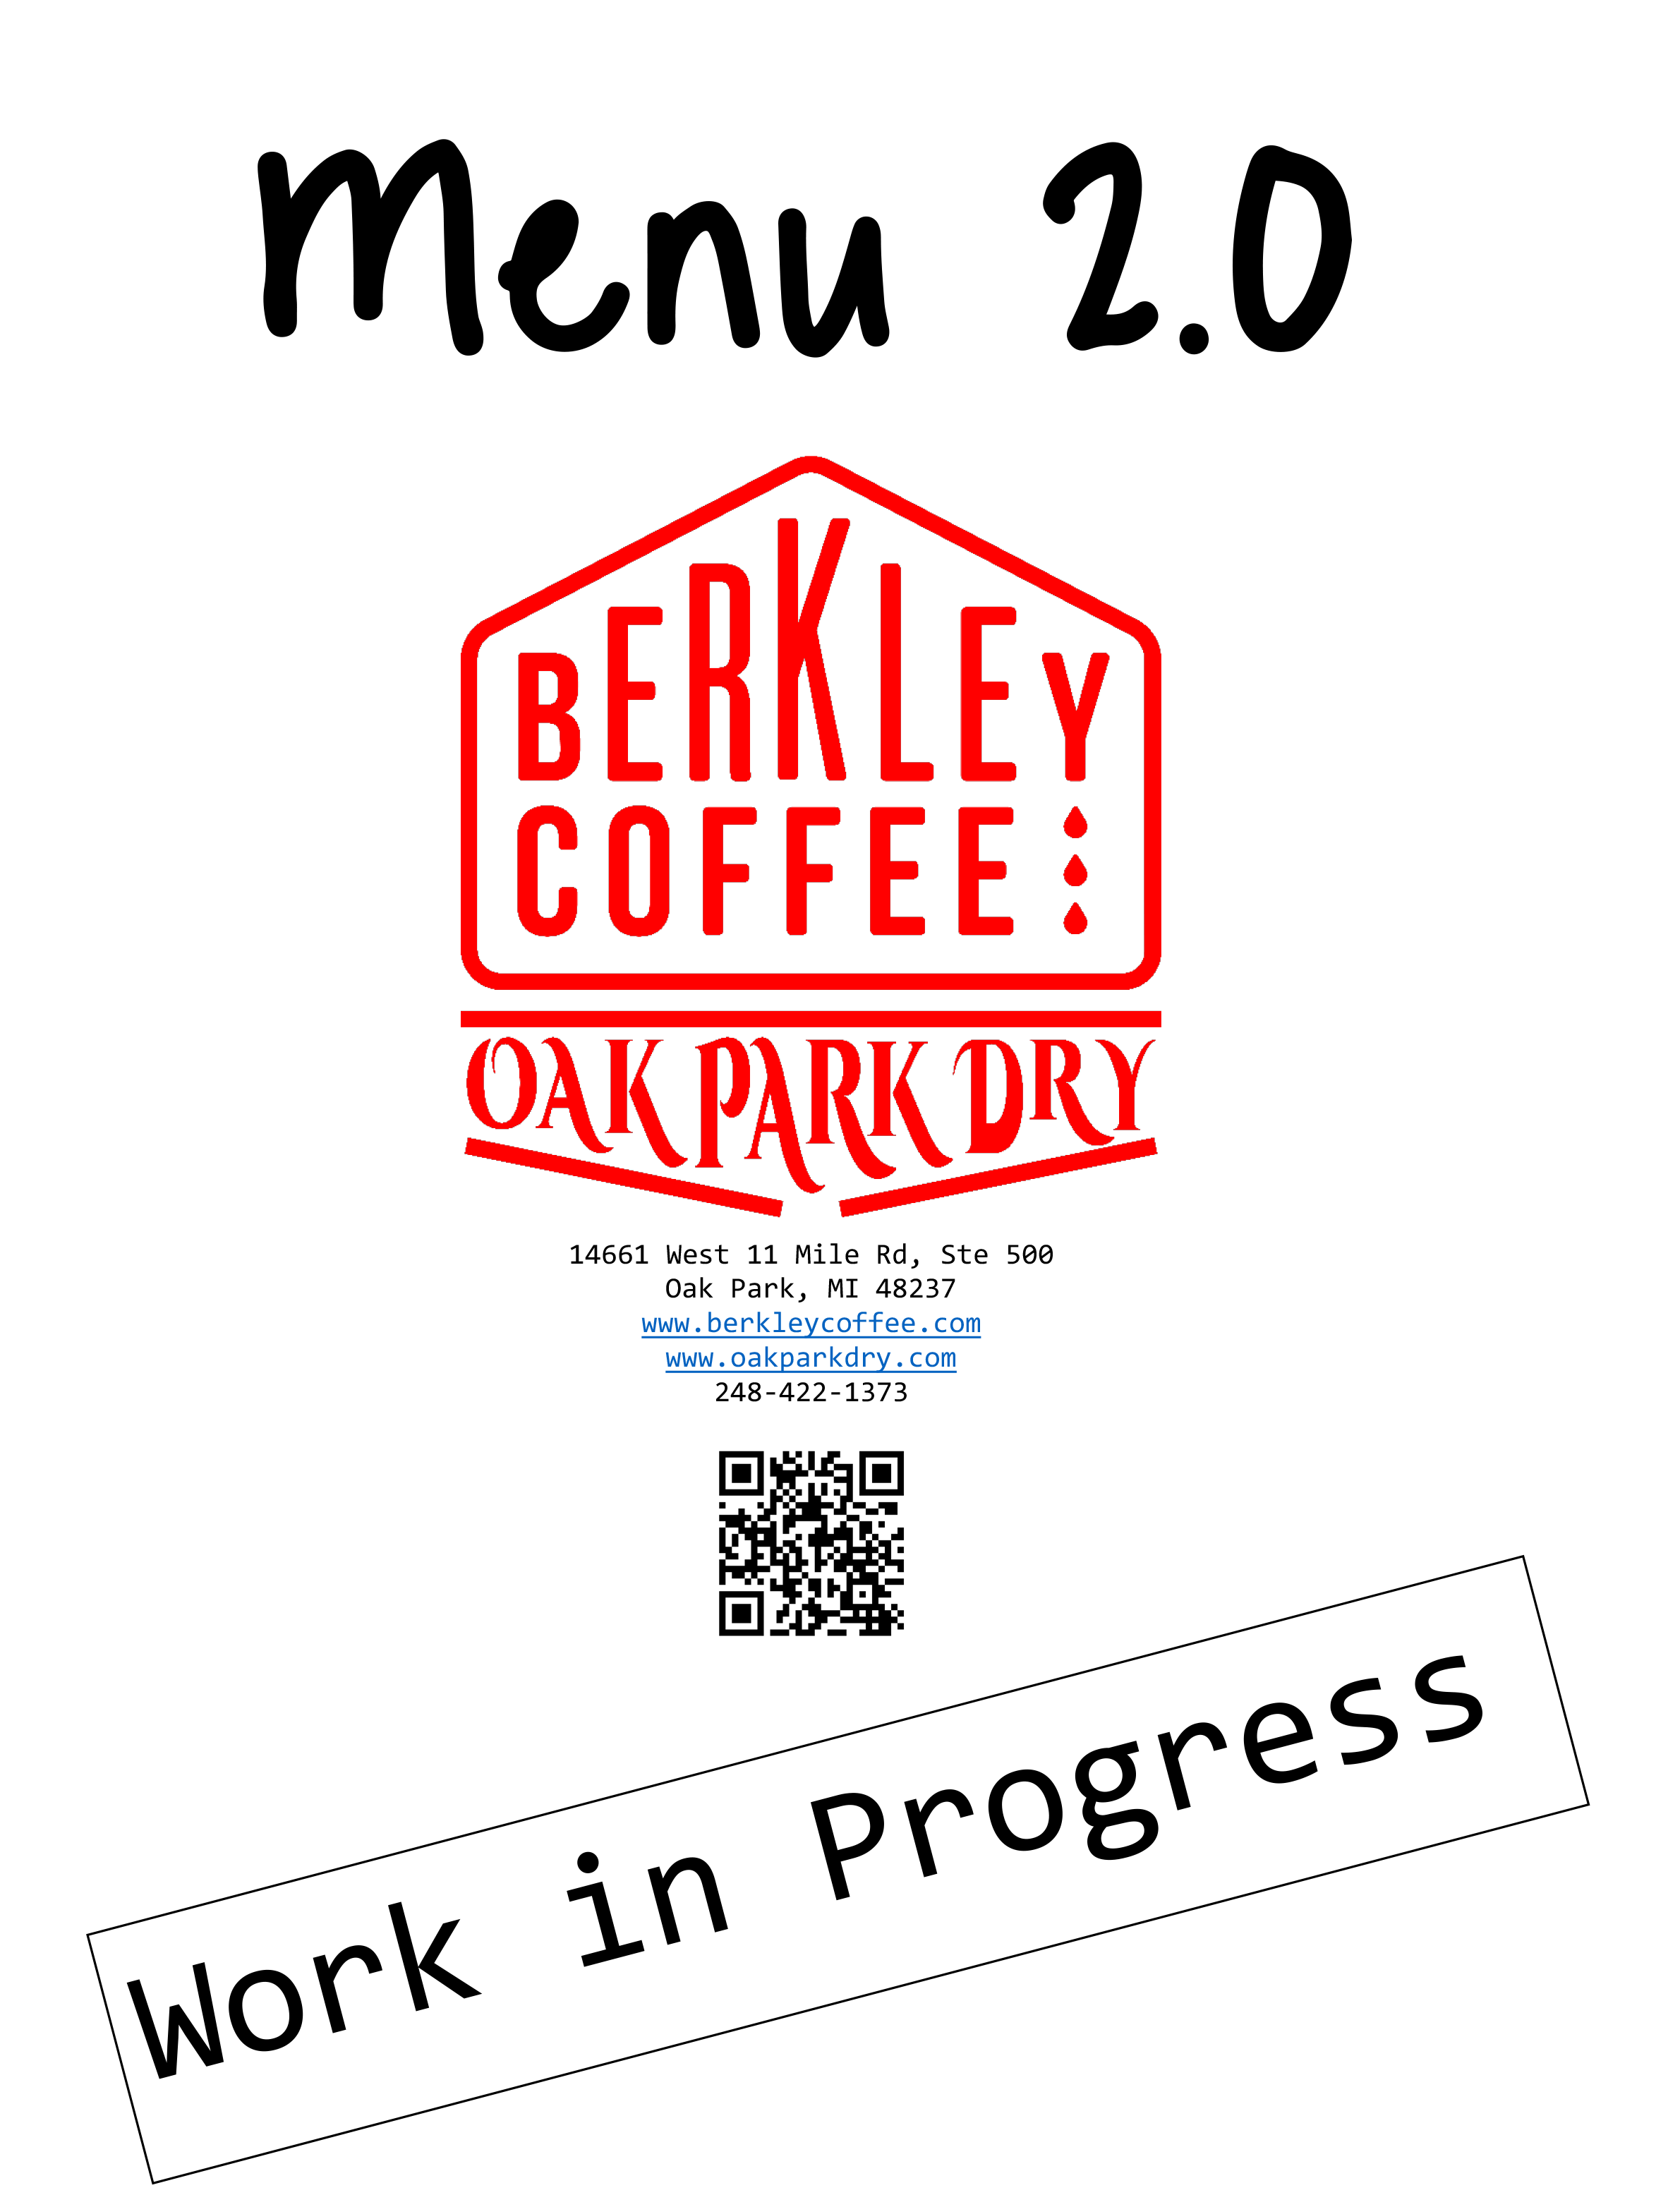 Berkley Coffee & Oak Park Dry 14661 W Eleven Mile Rd Ste 500, Oak Park, MI 48237